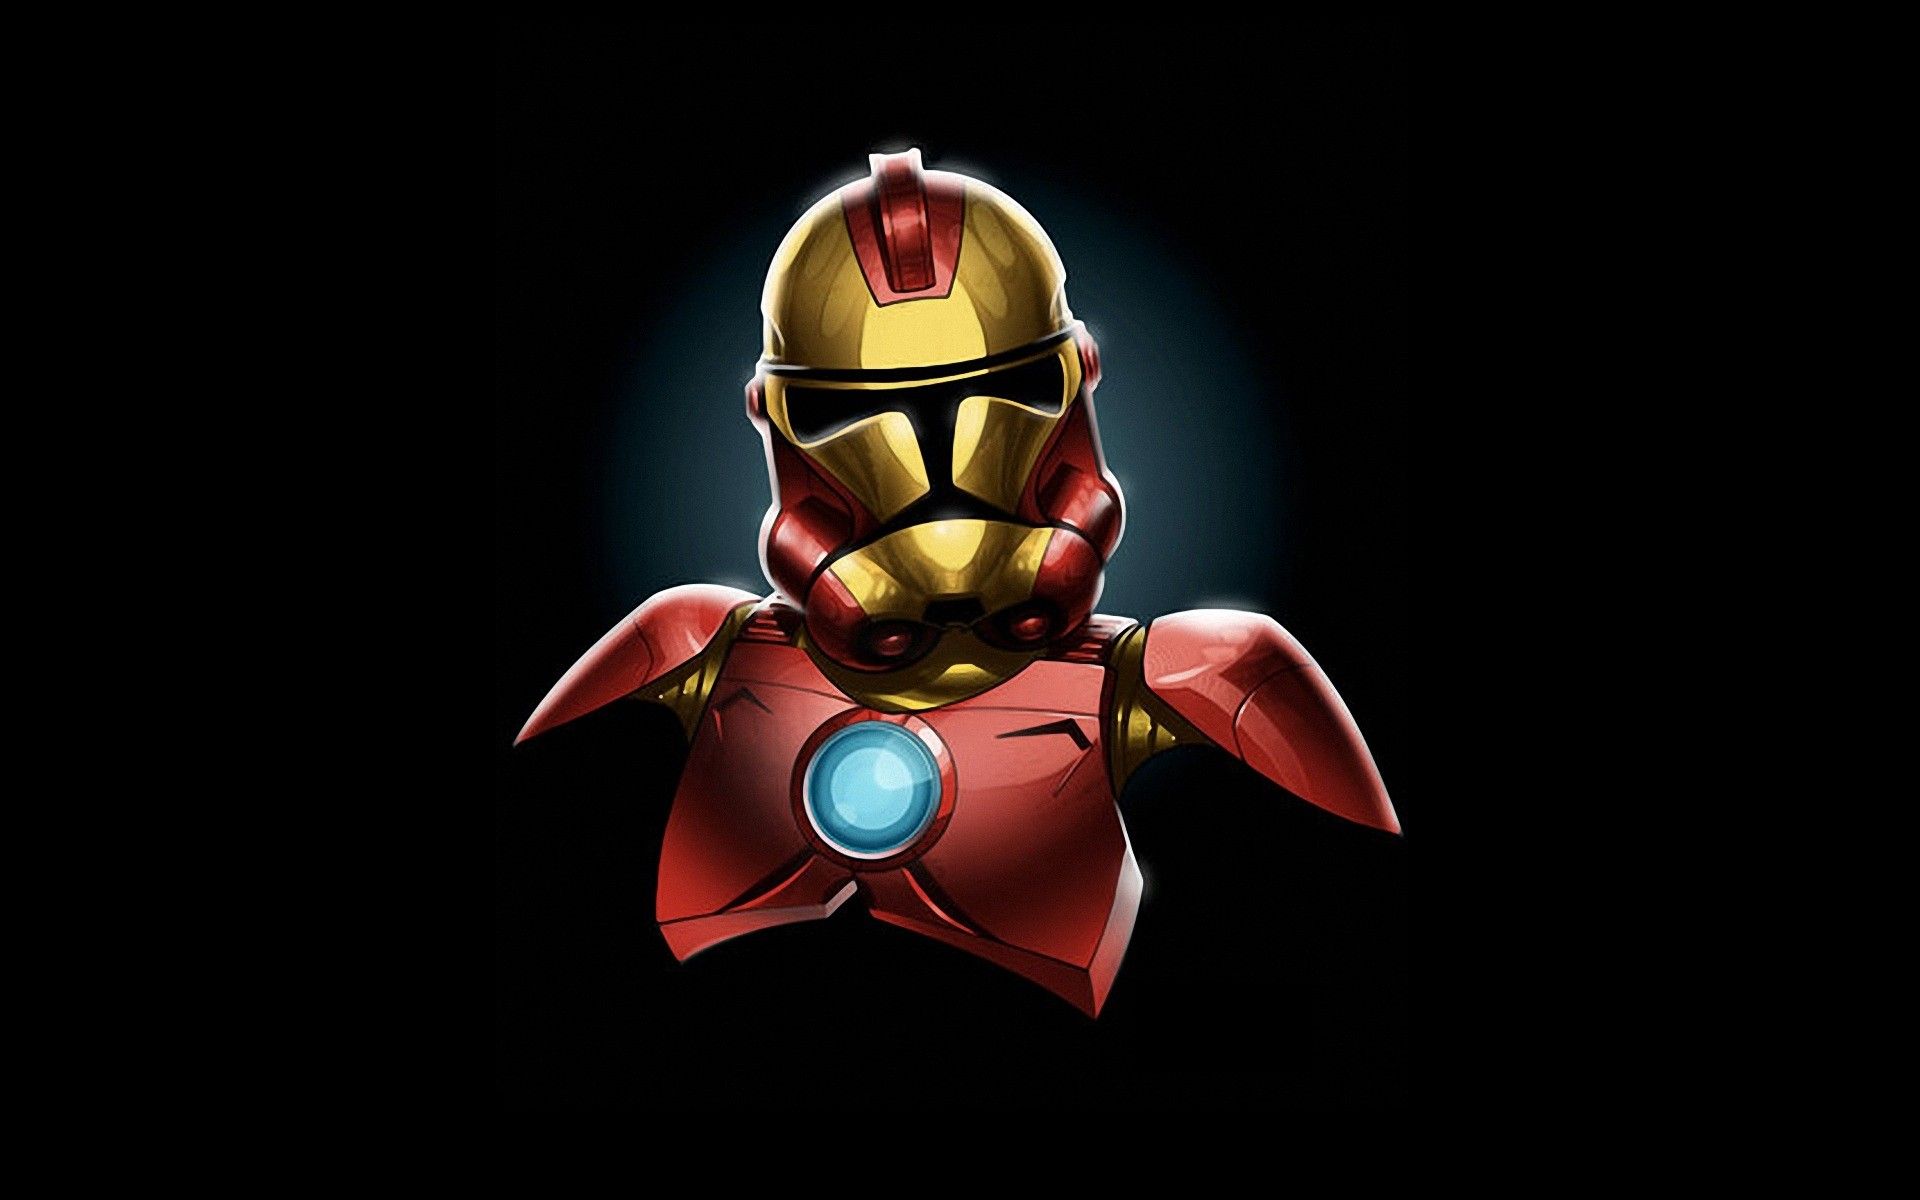 Star wars minimalistic iron man stormtroopers marvel comics